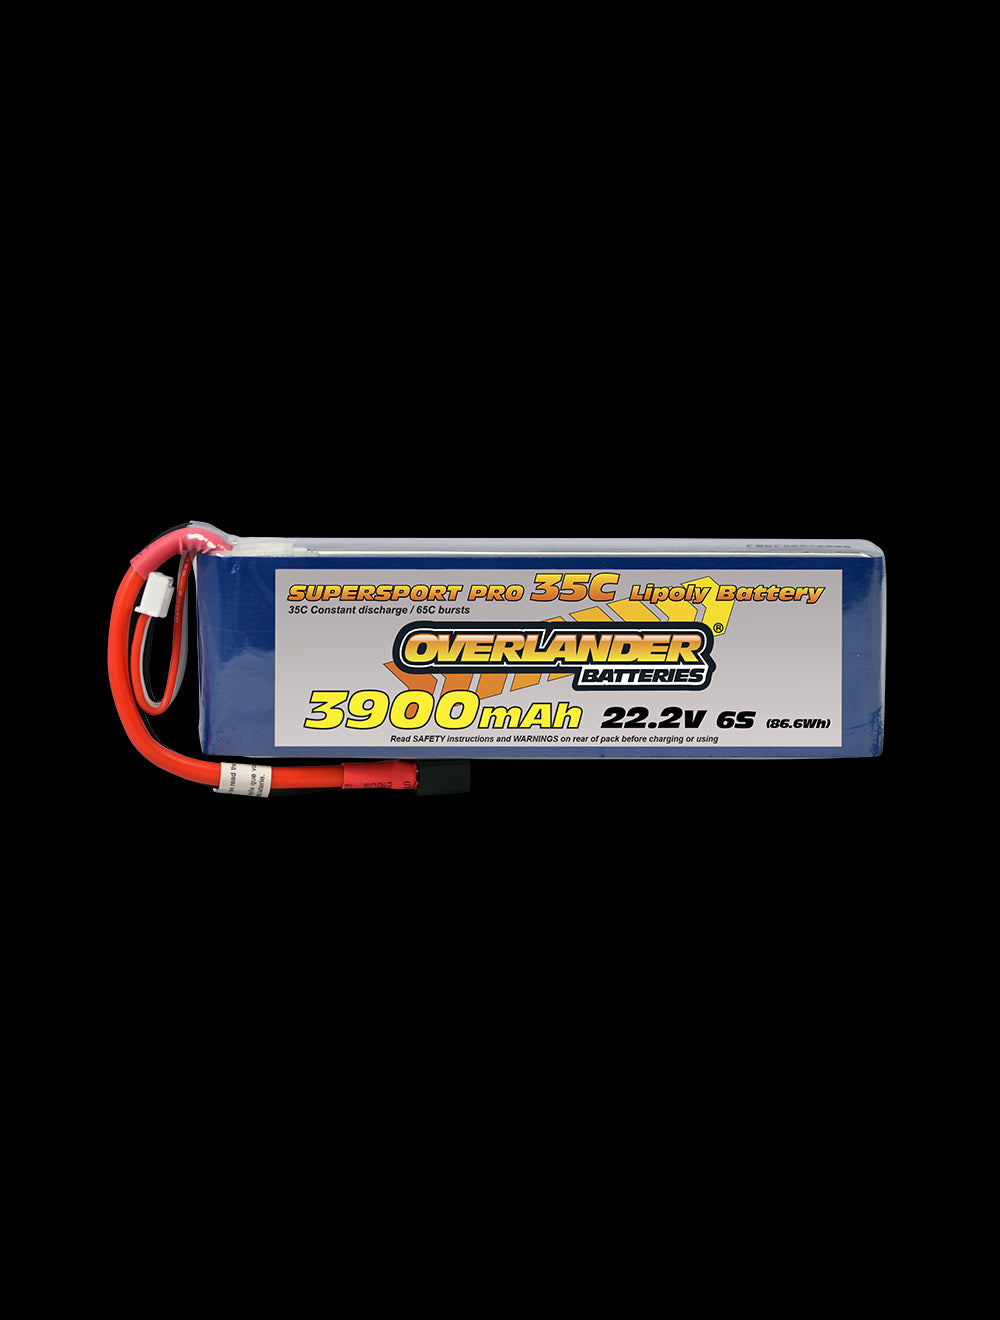 Overlander 3900mAh 22.2V 6S 35C Supersport Pro LiPo Battery - XT60 Connector 2473